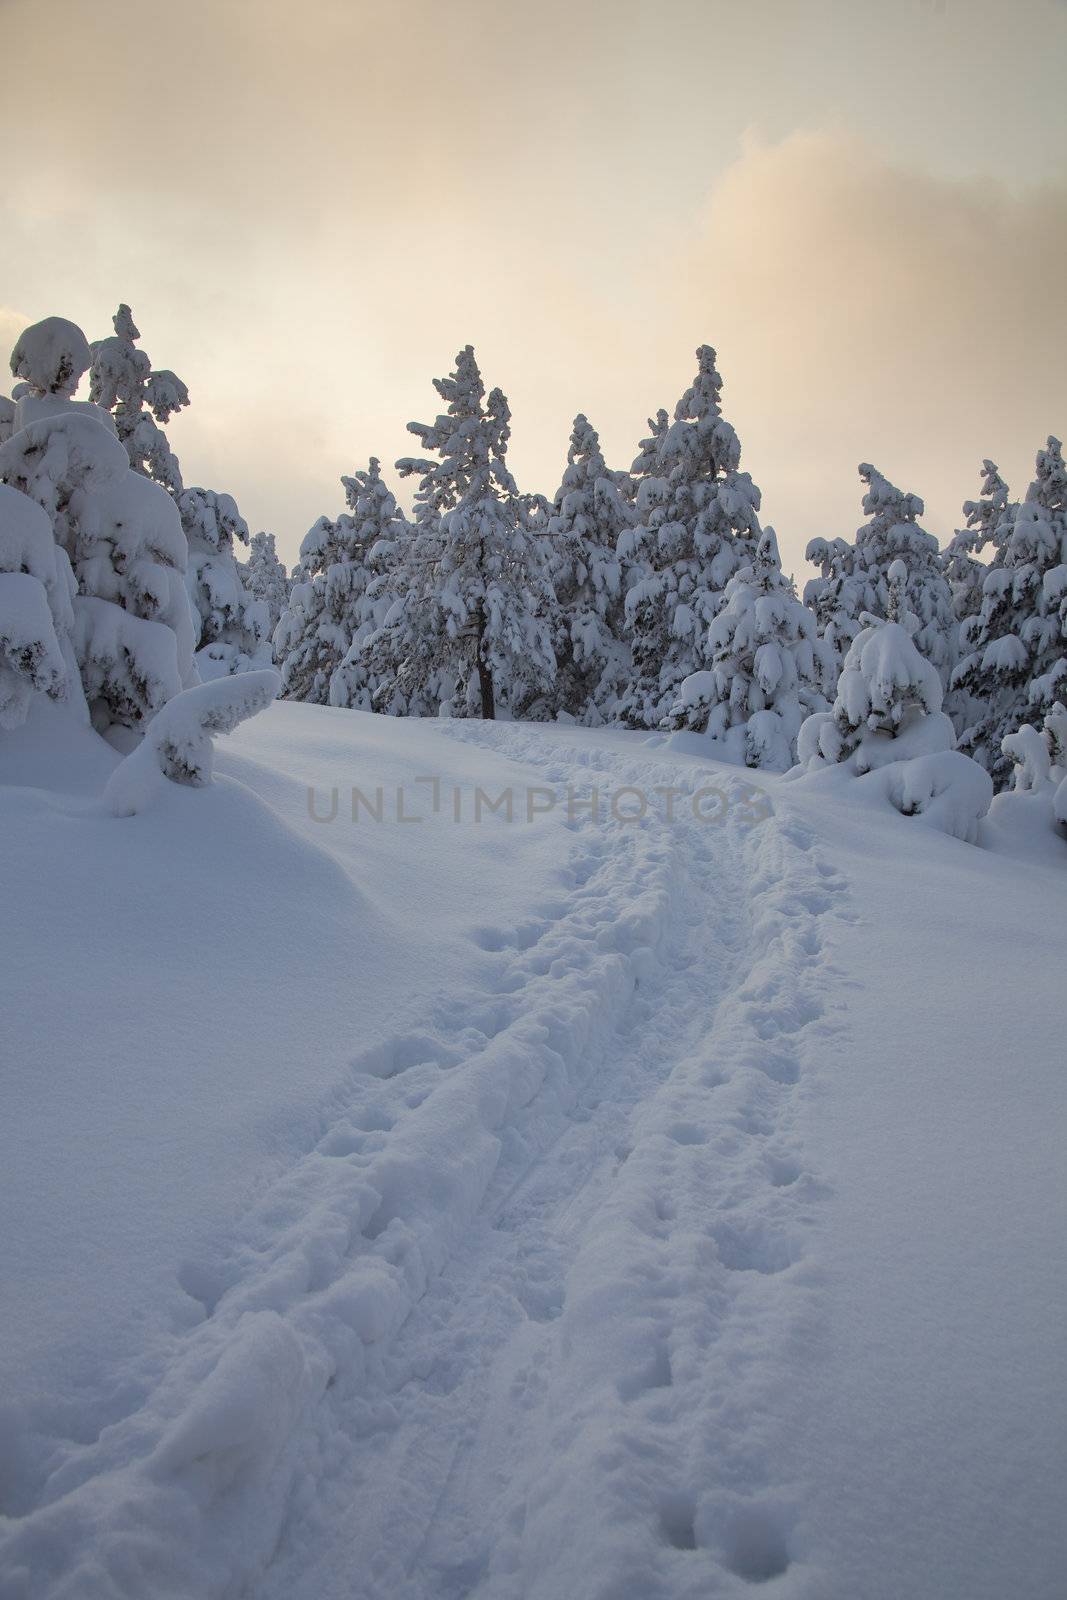 Idilic winter scene wirh snow and footprints, Divcibare, Serbia